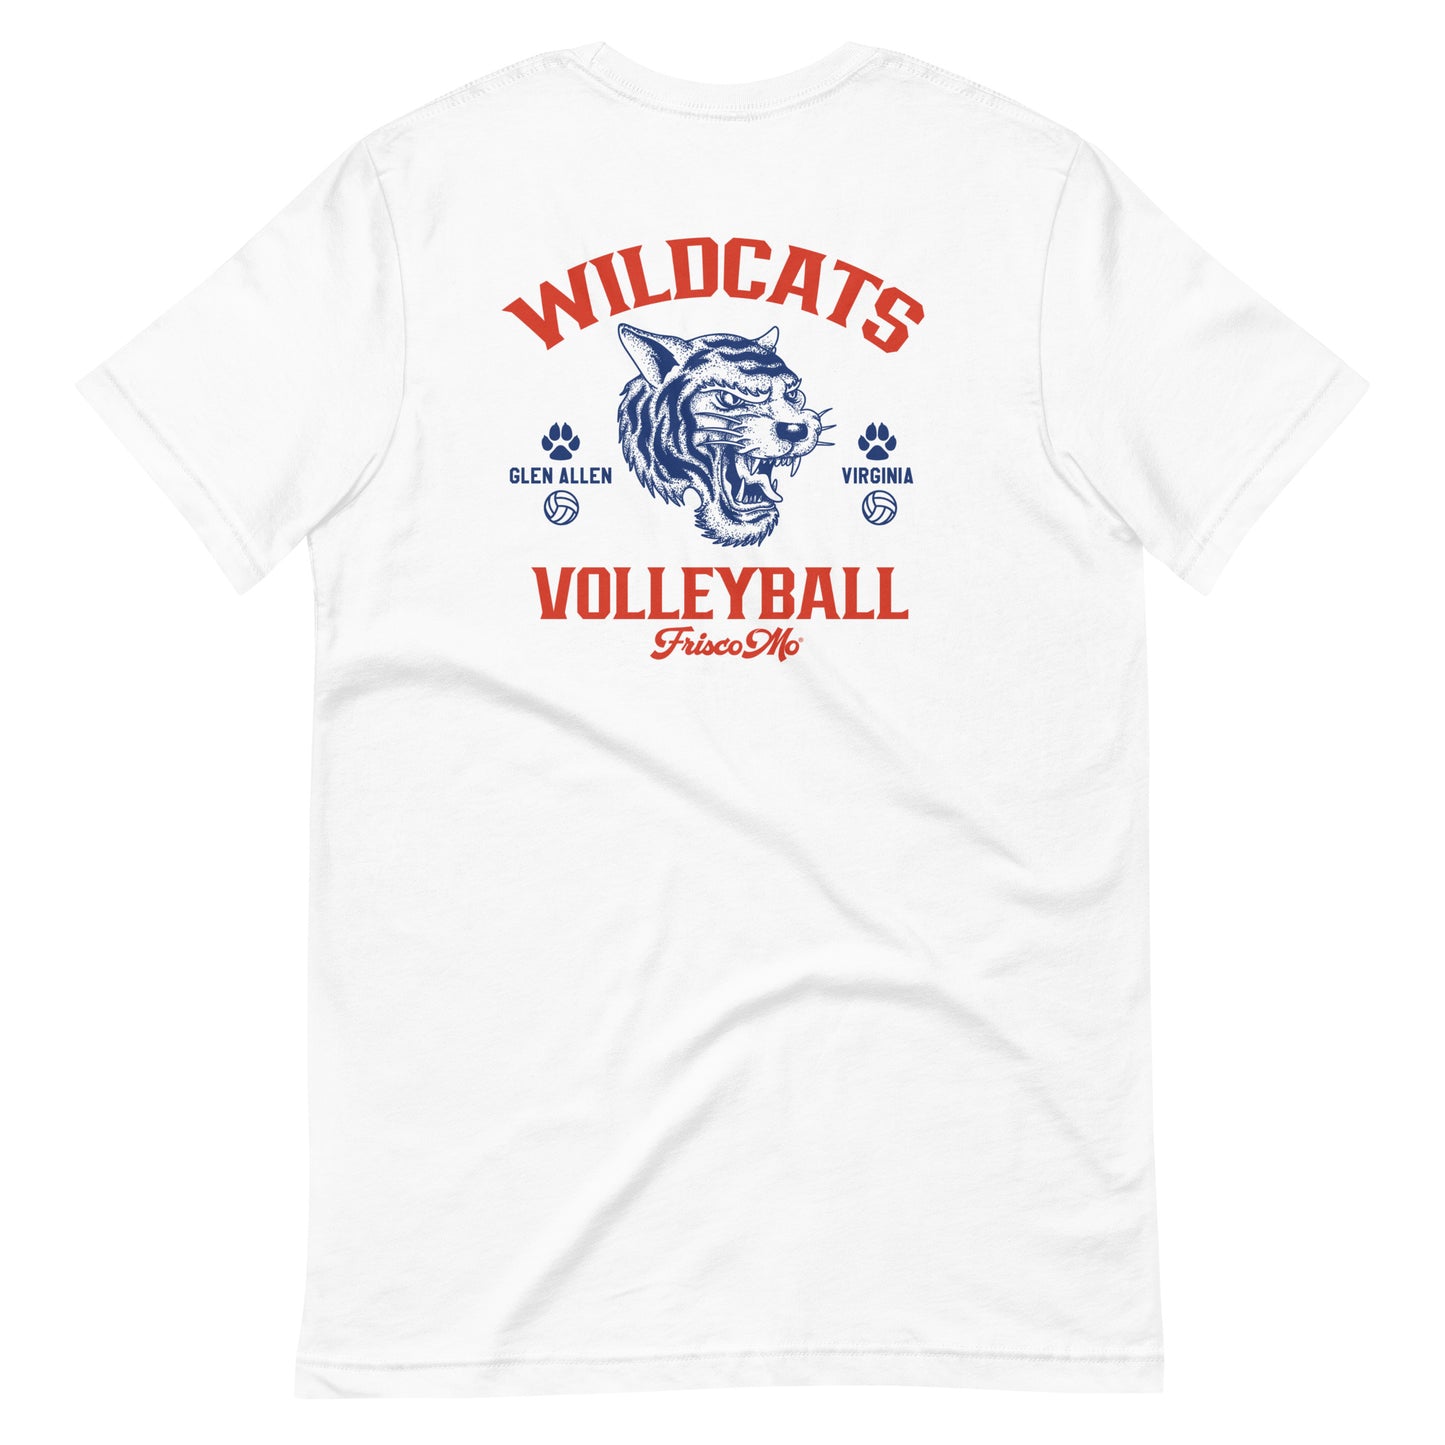 Wildcats Volleyball Glen Allen VA